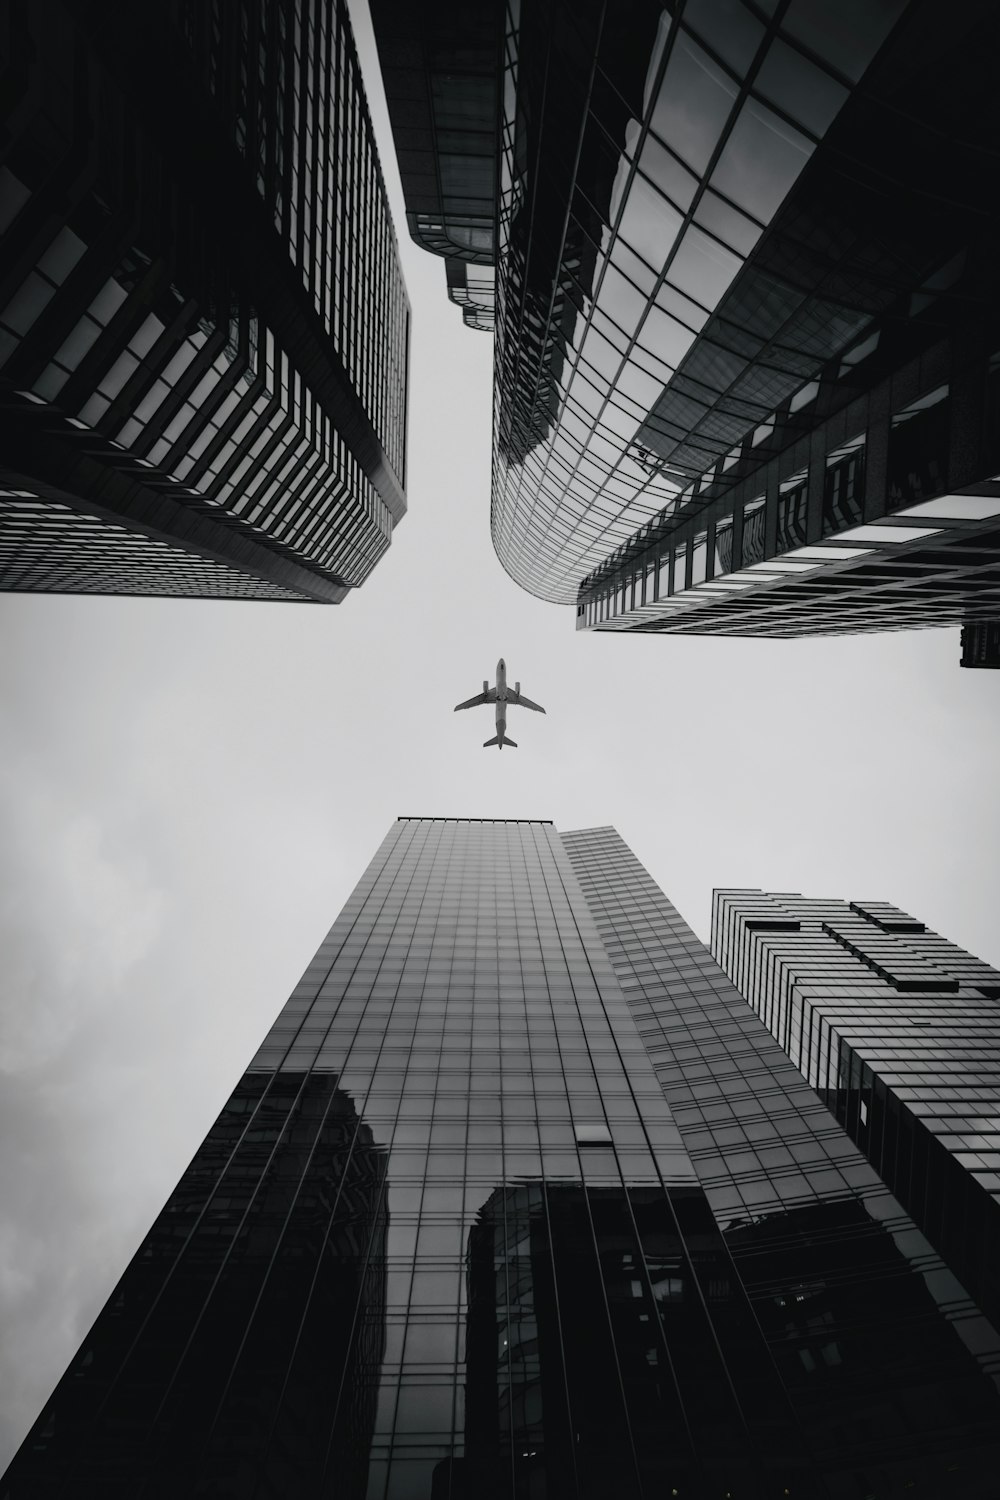 aeroplano che sorvola i grattacieli durante il giorno